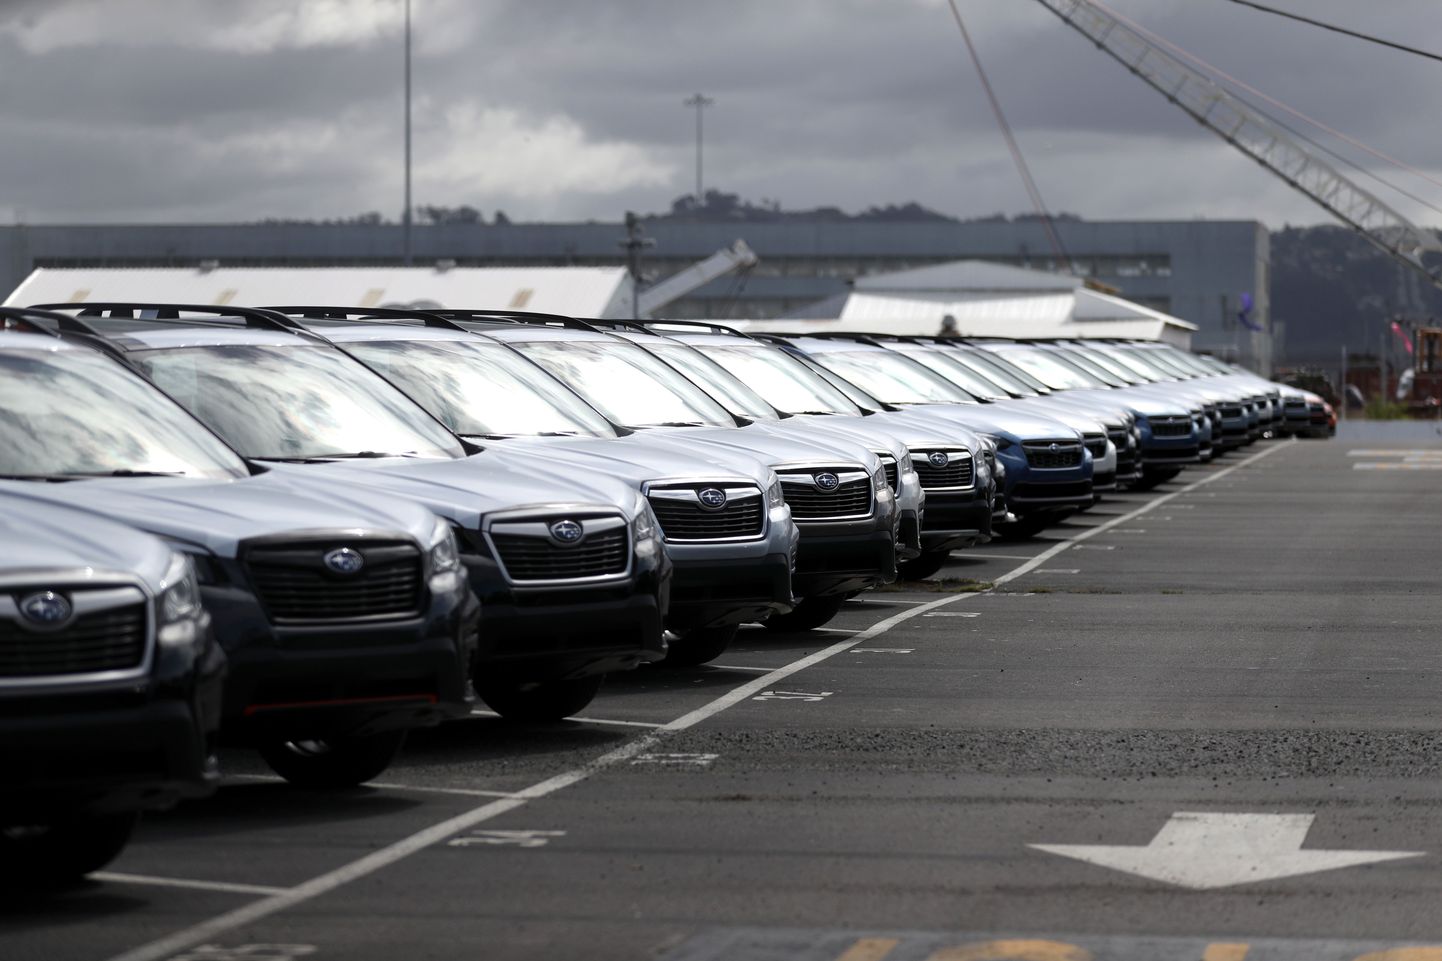 Jaapani tootja Subaru uhiuued sõiduautod USA-s Californias Richmondi sadama lähistel.